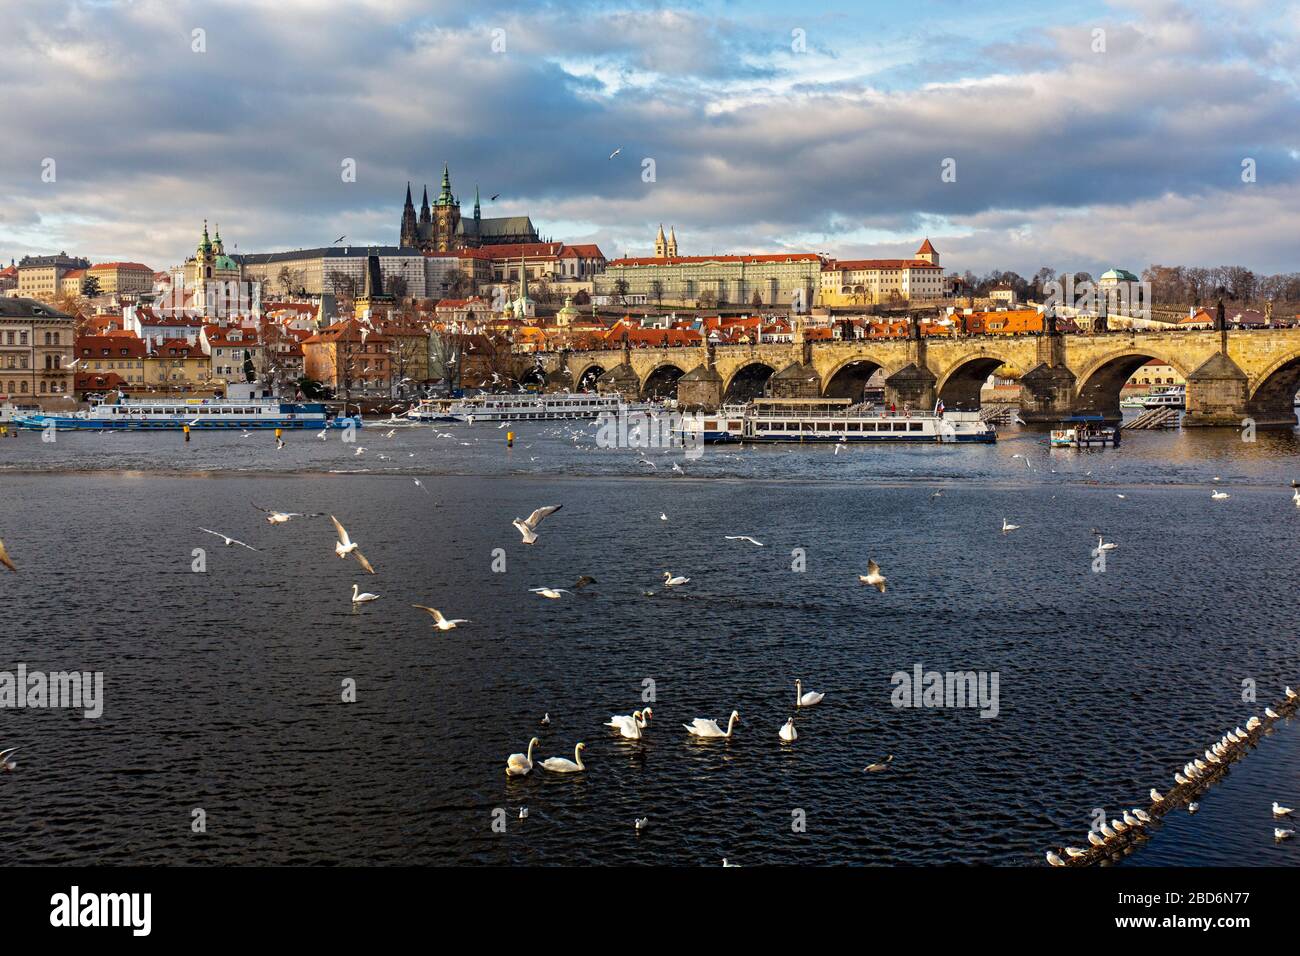 Blick über die Moldau auf die Prager Burg (Hradschin), Prag, Tschechische Republik Stock Photo